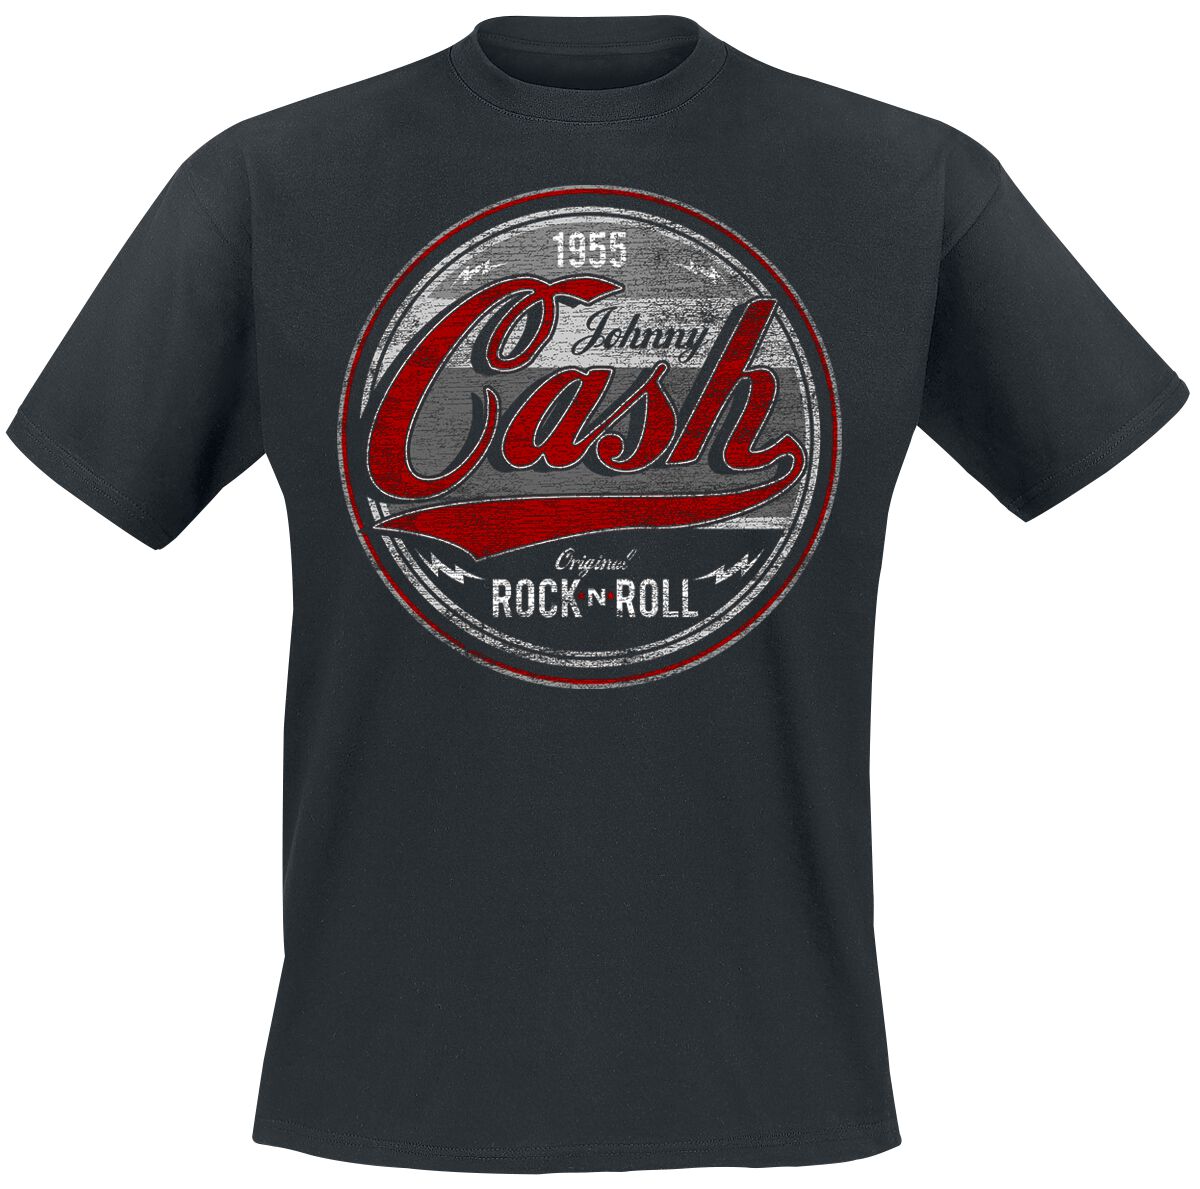 Johnny Cash T-Shirt - Original Rock n Roll Red/Grey - S bis 4XL - für Männer - Größe L - schwarz  - Lizenziertes Merchandise!